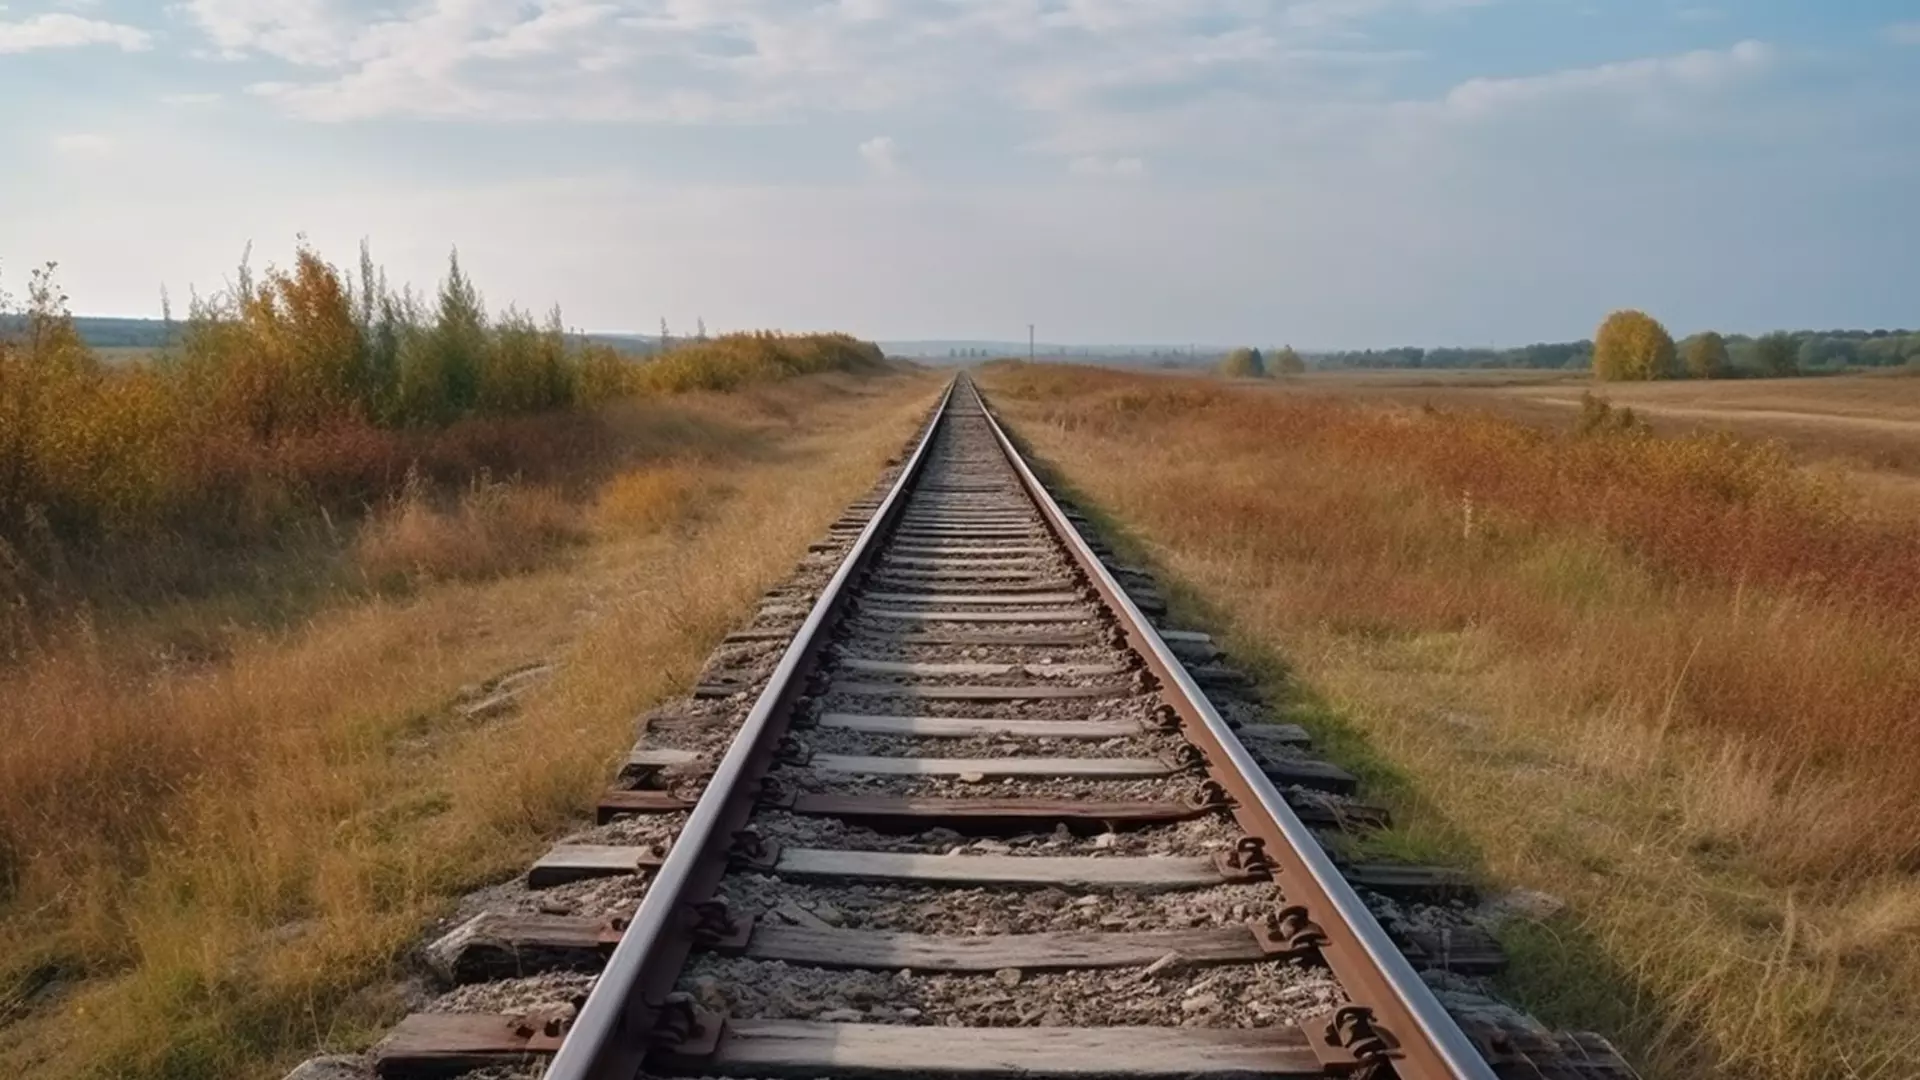 Глава Крыма поддержал идею железной дороги в республику через новые регионы